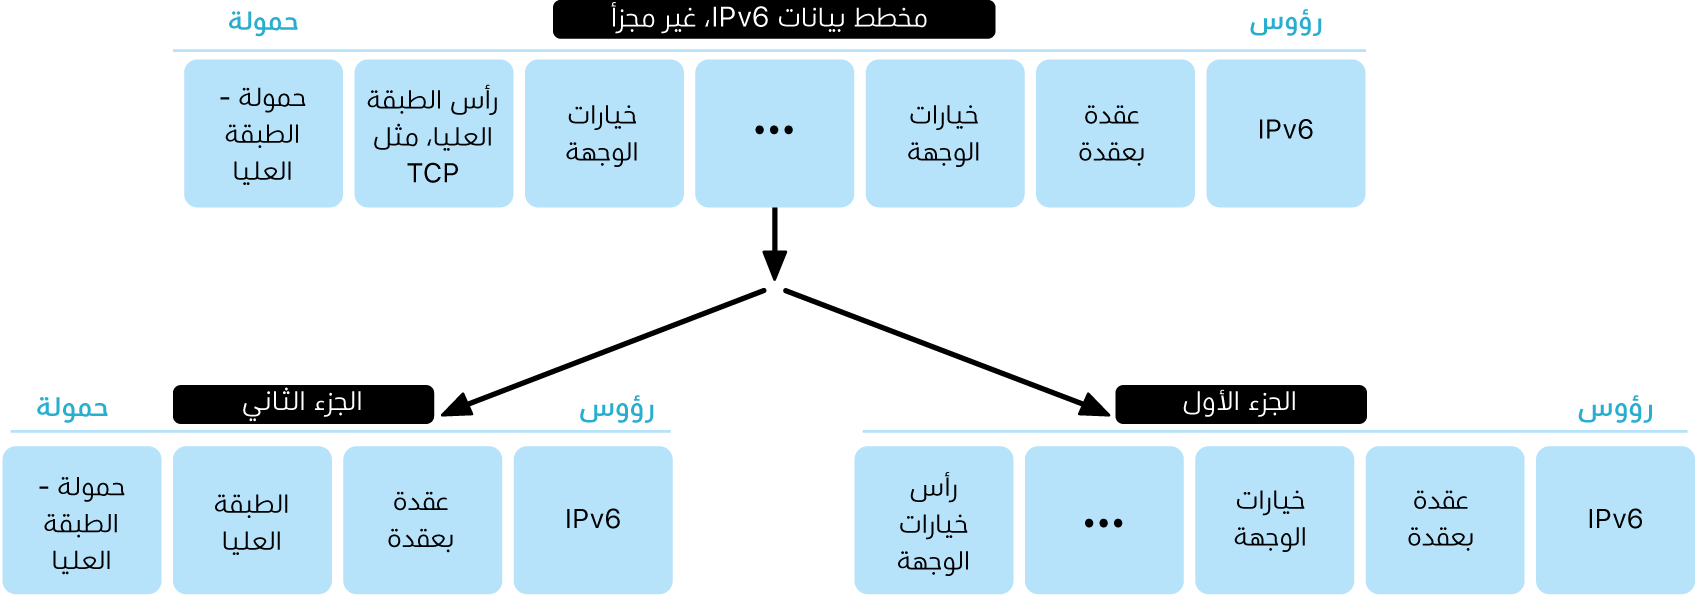 رسم تخطيطي يوضح مخطط بيانات IPv6 في طبقتين: طبقة غير مجزأة وأسفلها طبقة مجزأة.